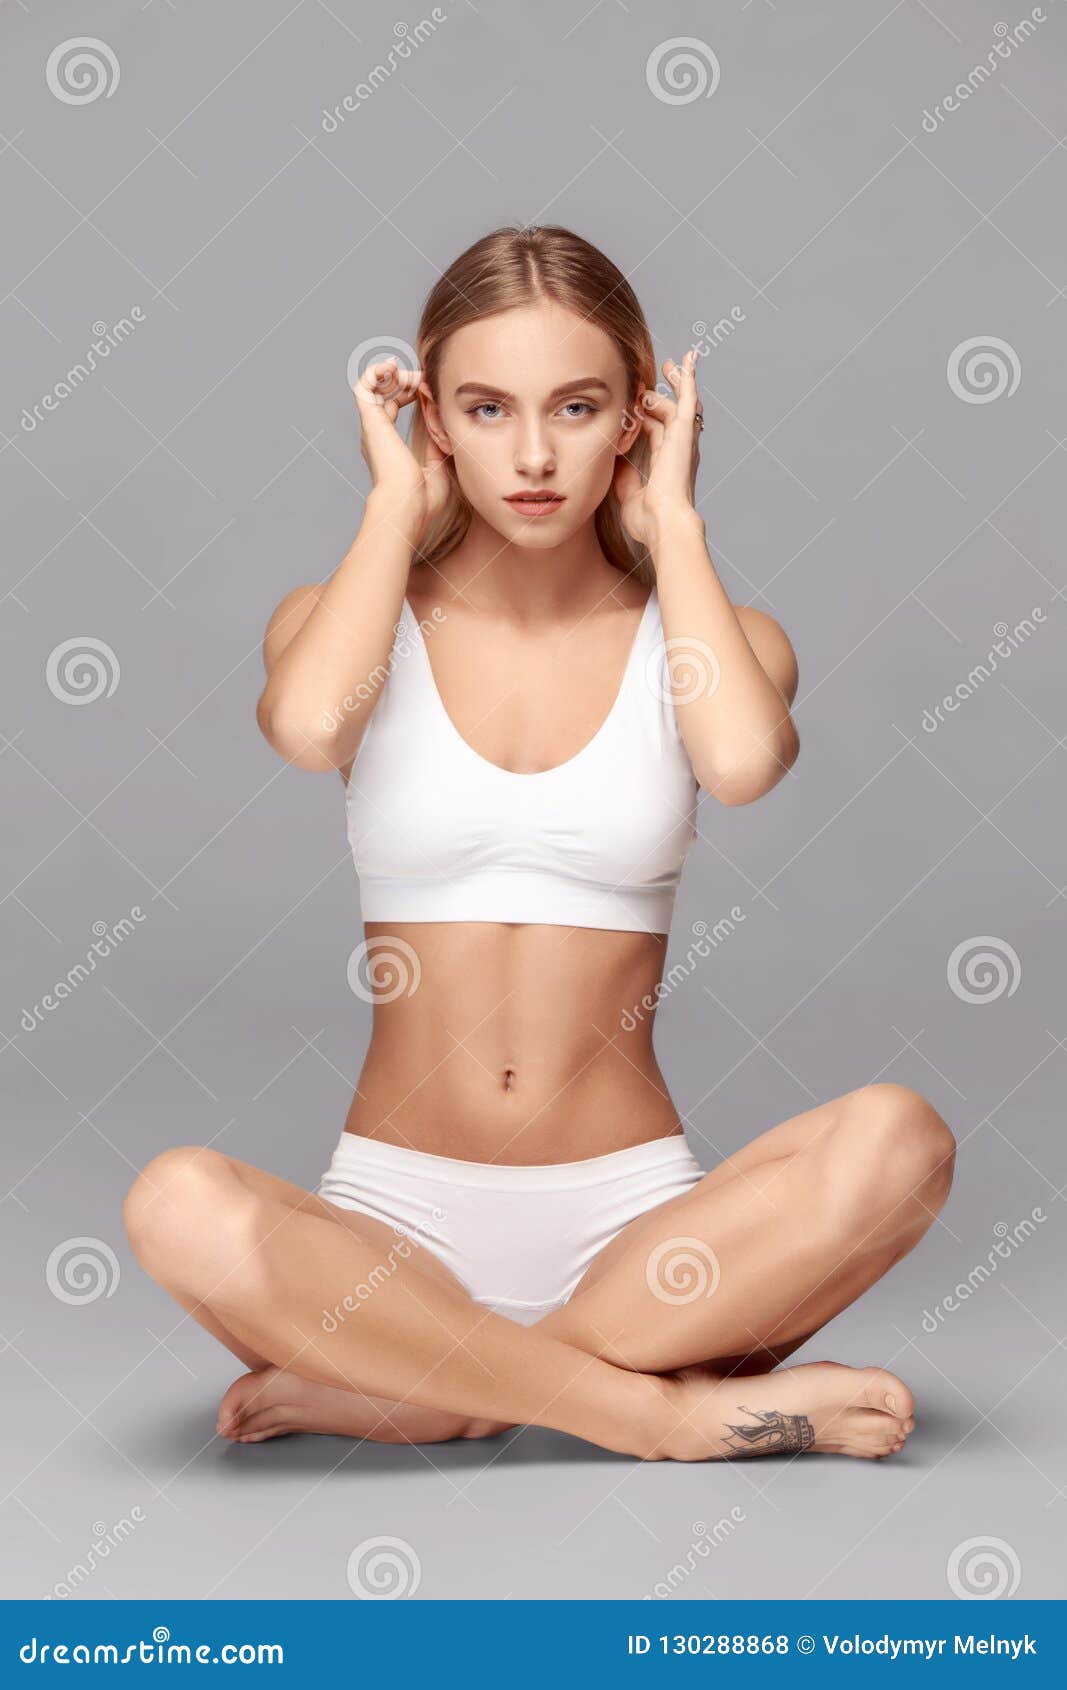 https://thumbs.dreamstime.com/z/perfect-slim-toned-young-body-girl-perfect-slim-toned-young-body-girl-fit-woman-studio-fitness-diet-sports-130288868.jpg